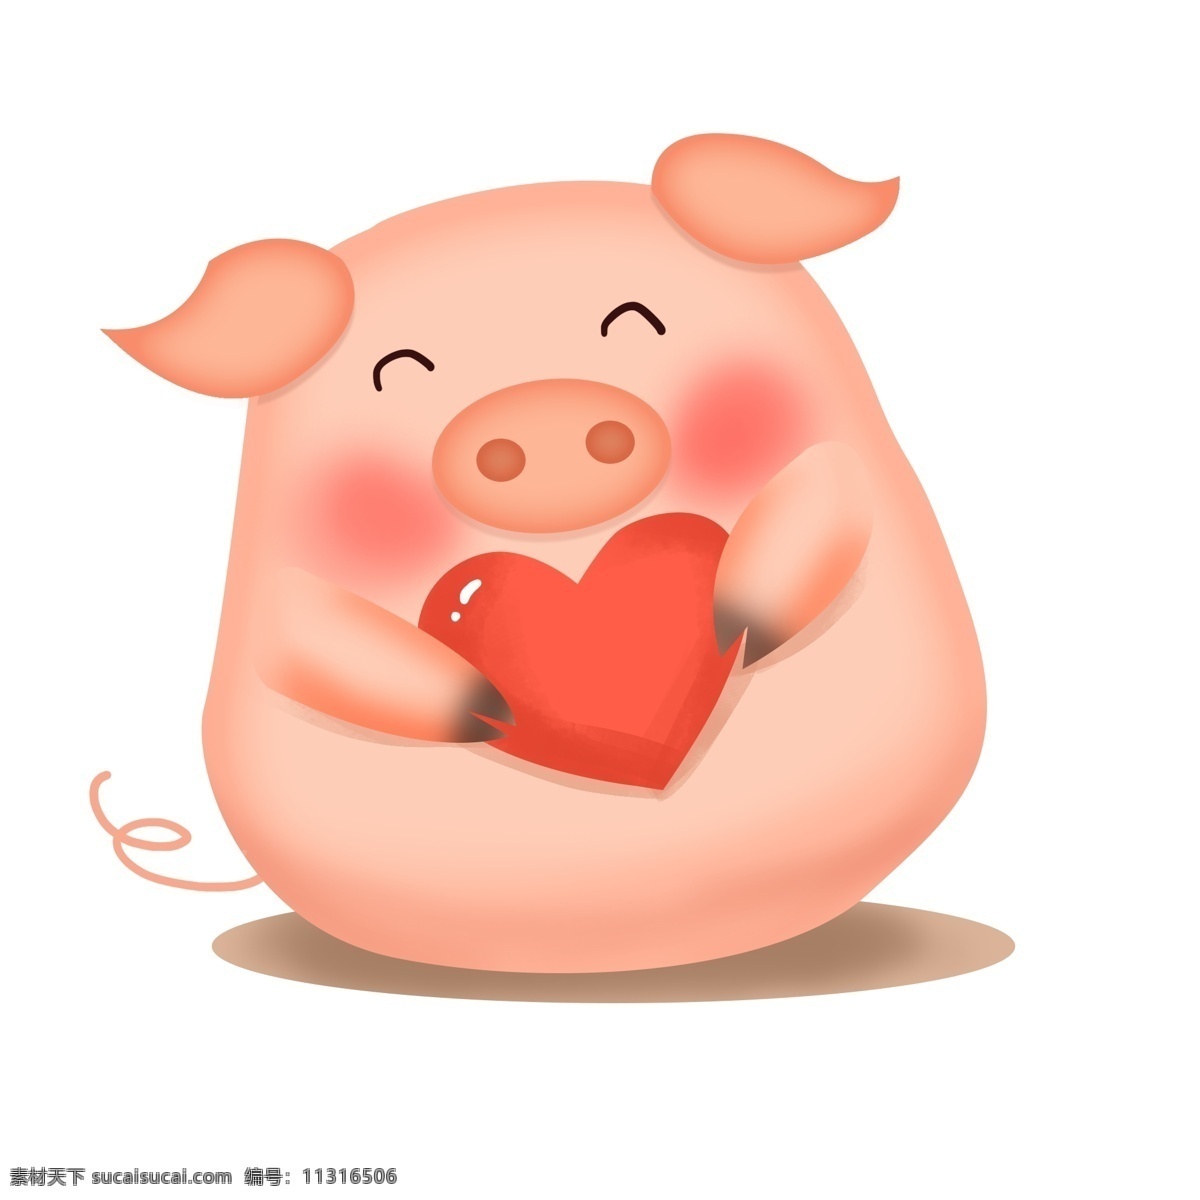 手绘 爱心 小 猪 插画 粉红色猪猪 可爱猪仔 可爱 爱心猪 卡通猪 粉红猪 粉色猪 红色爱心 发起爱心攻势